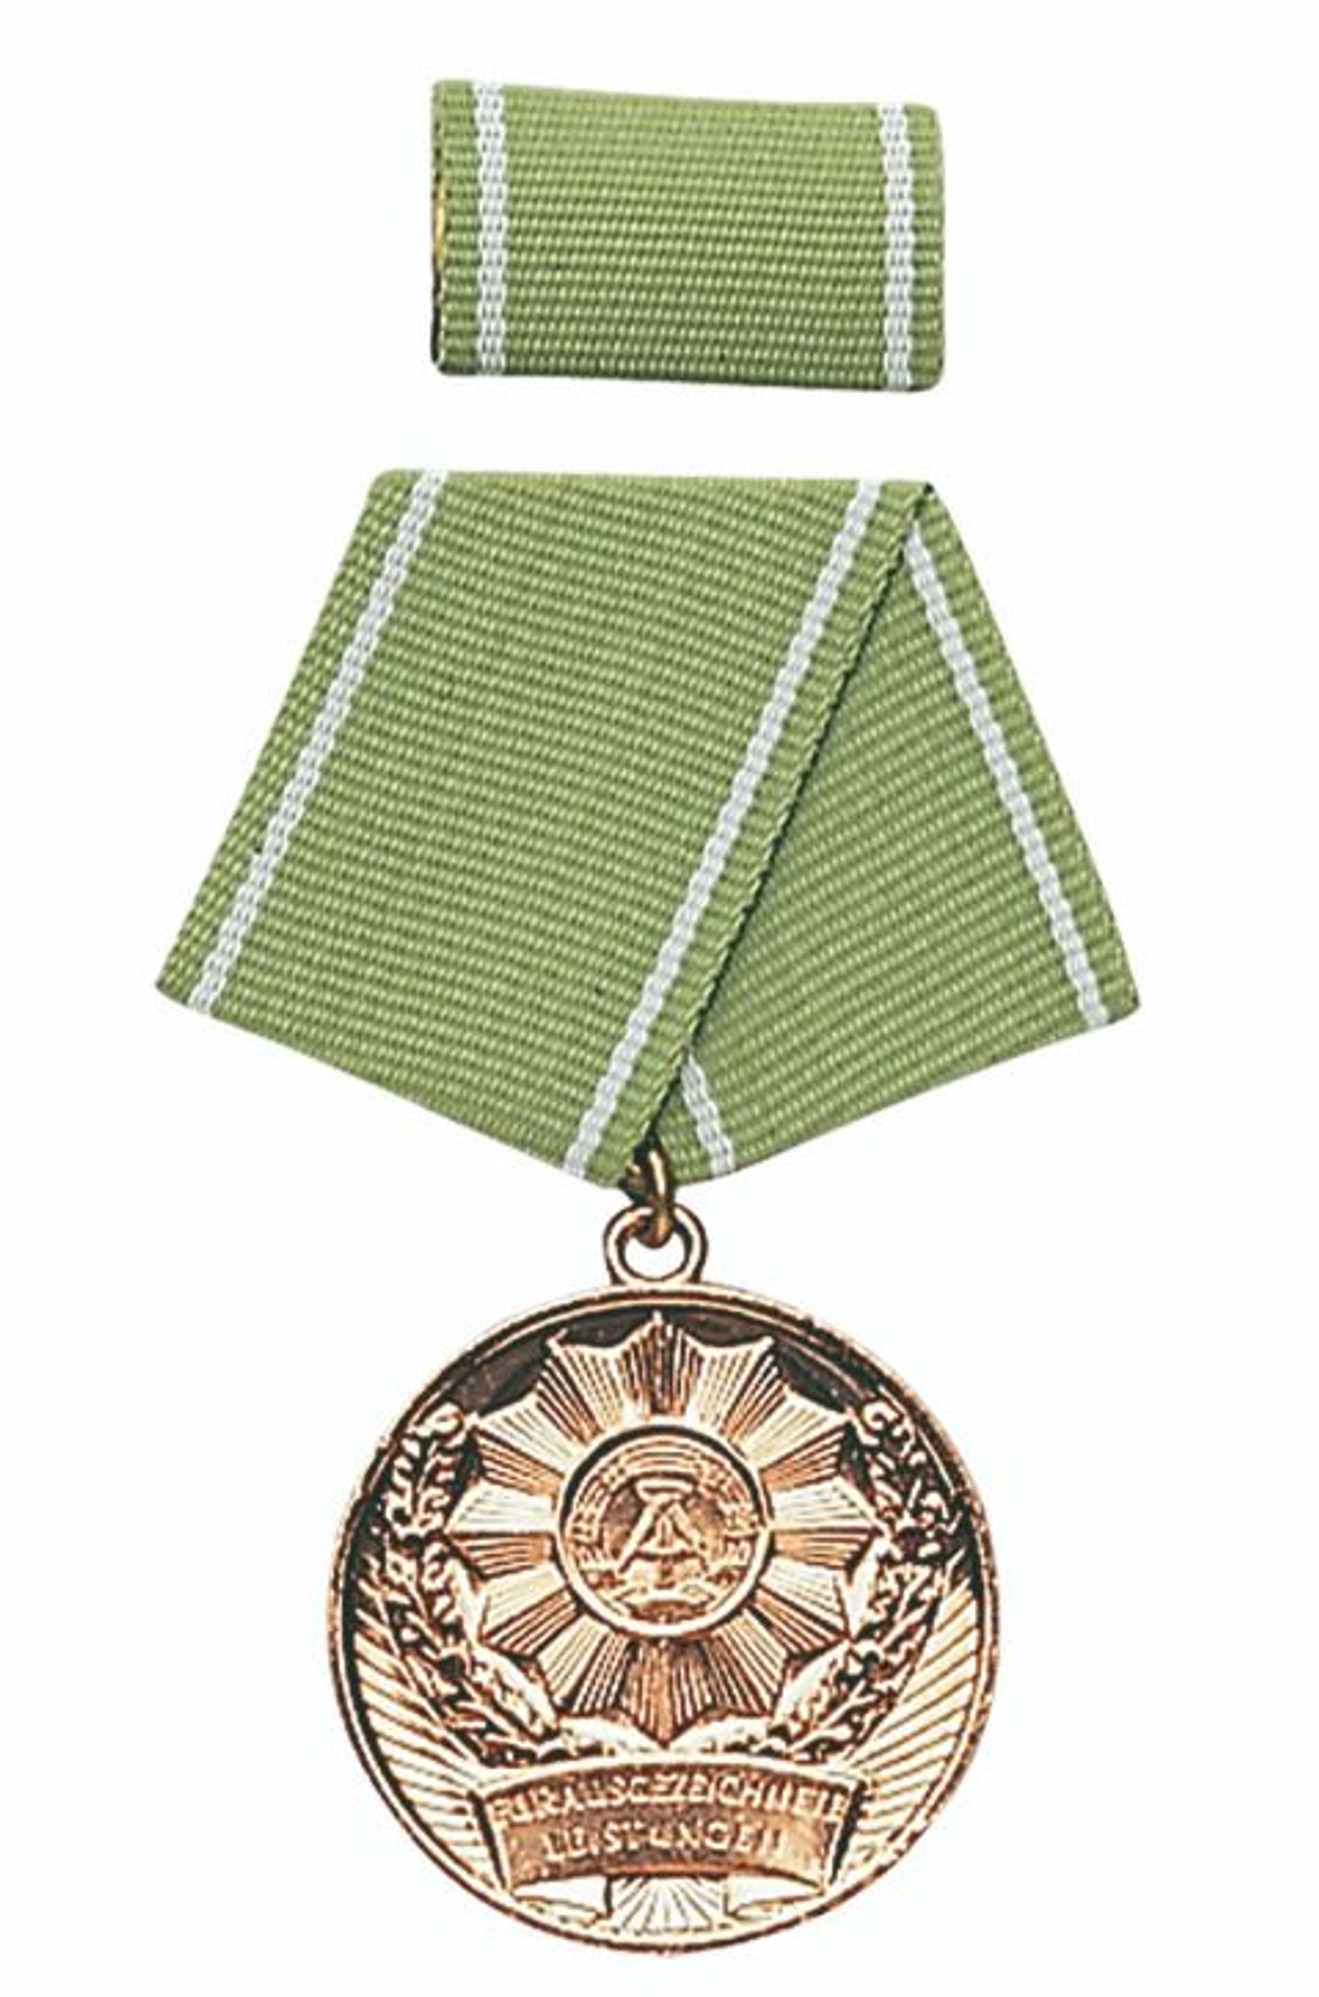 MDI Ausgezeichnete Leistungen Medal